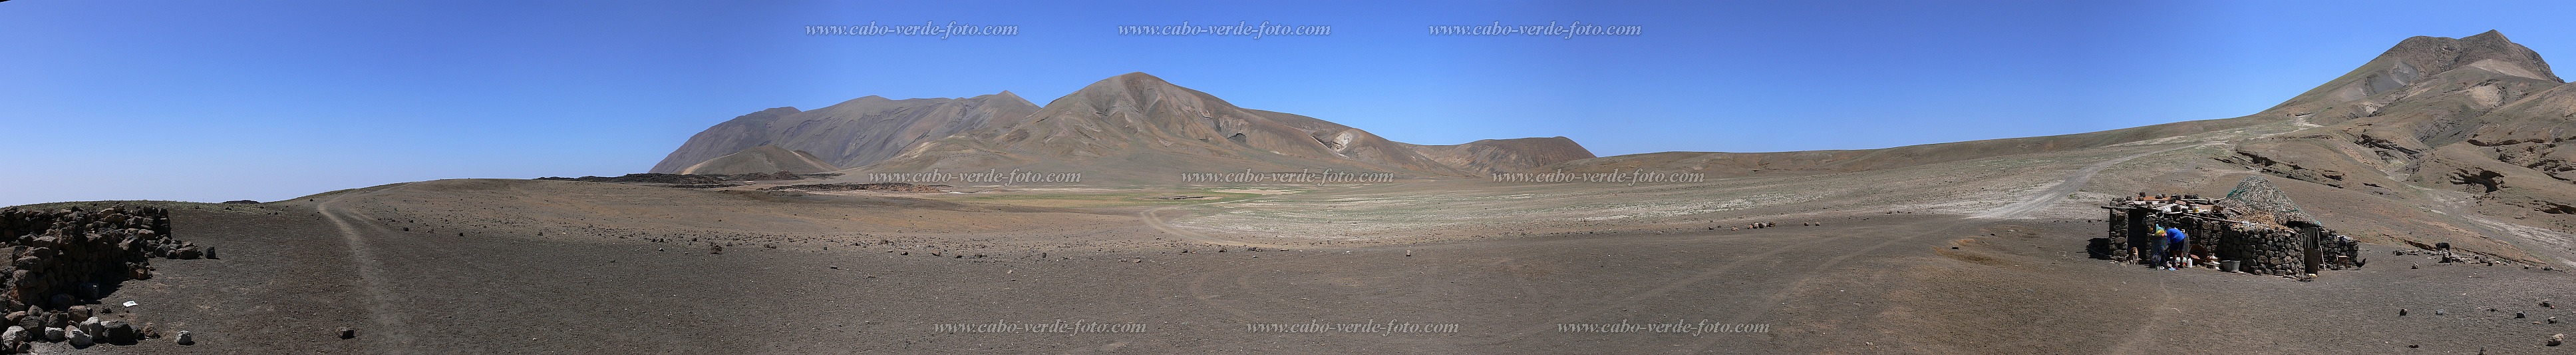 Santo Anto : Lagoinha Norte Tope de Coroa : montanha : Landscape MountainCabo Verde Foto Gallery